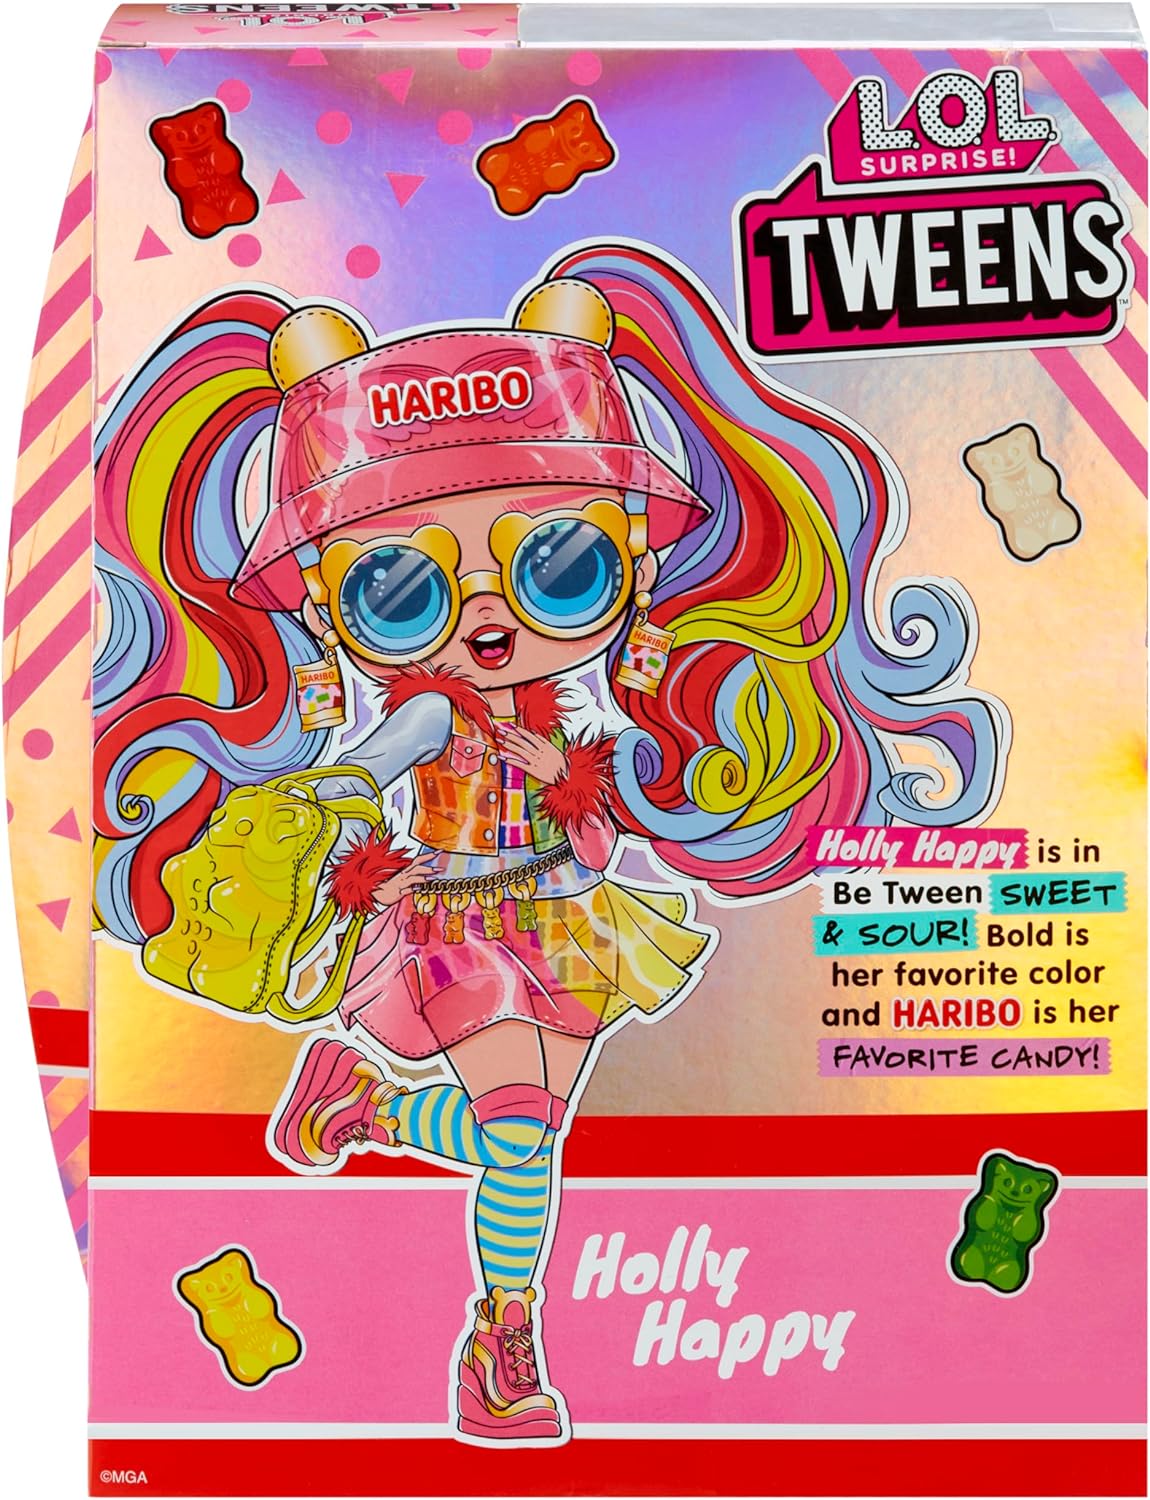 L.O.L. Surprise! 119920EUC Boneca adolescente Holly Happy com 15 surpresas e designs de moda com tema Haribo Candy - para crianças a partir de 4 anos, multicolorido